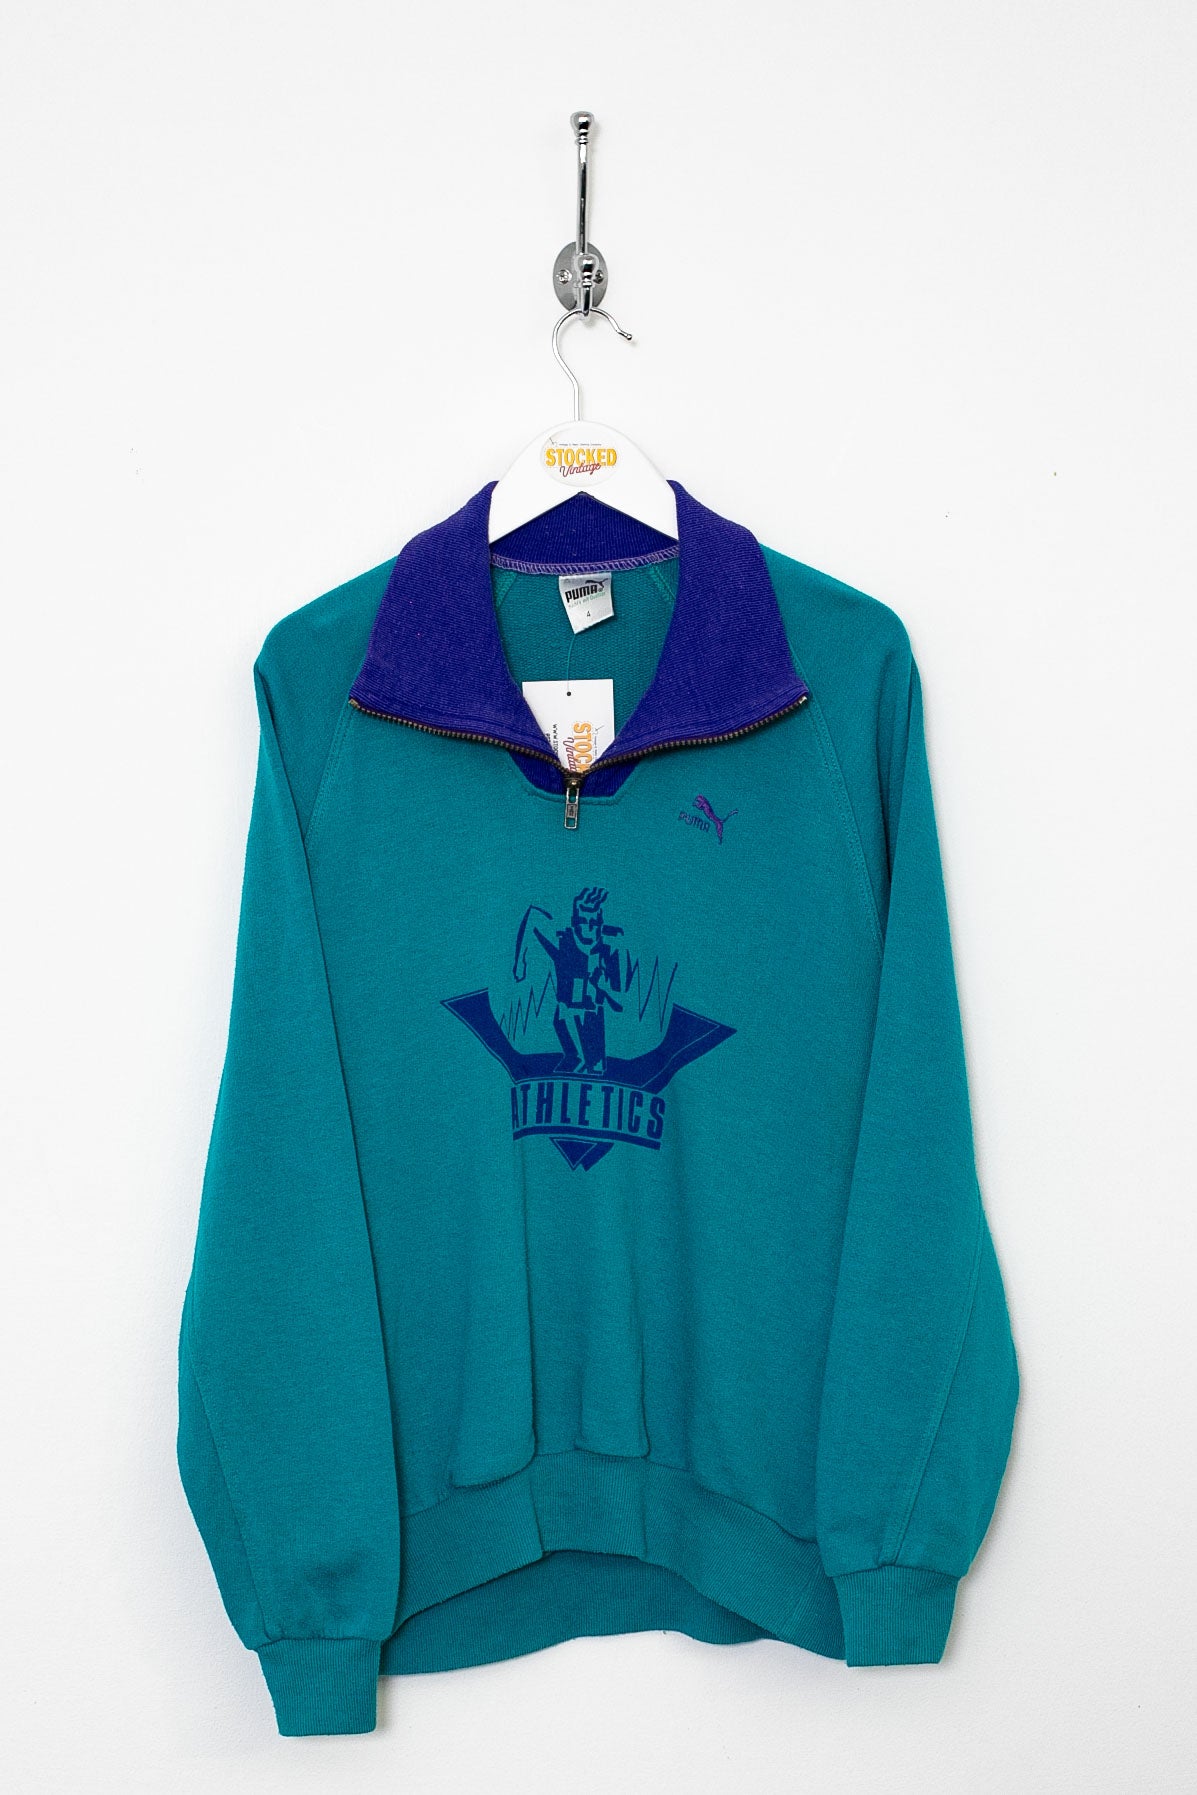 90s Puma 1/4 Zip Sweatshirt (S)